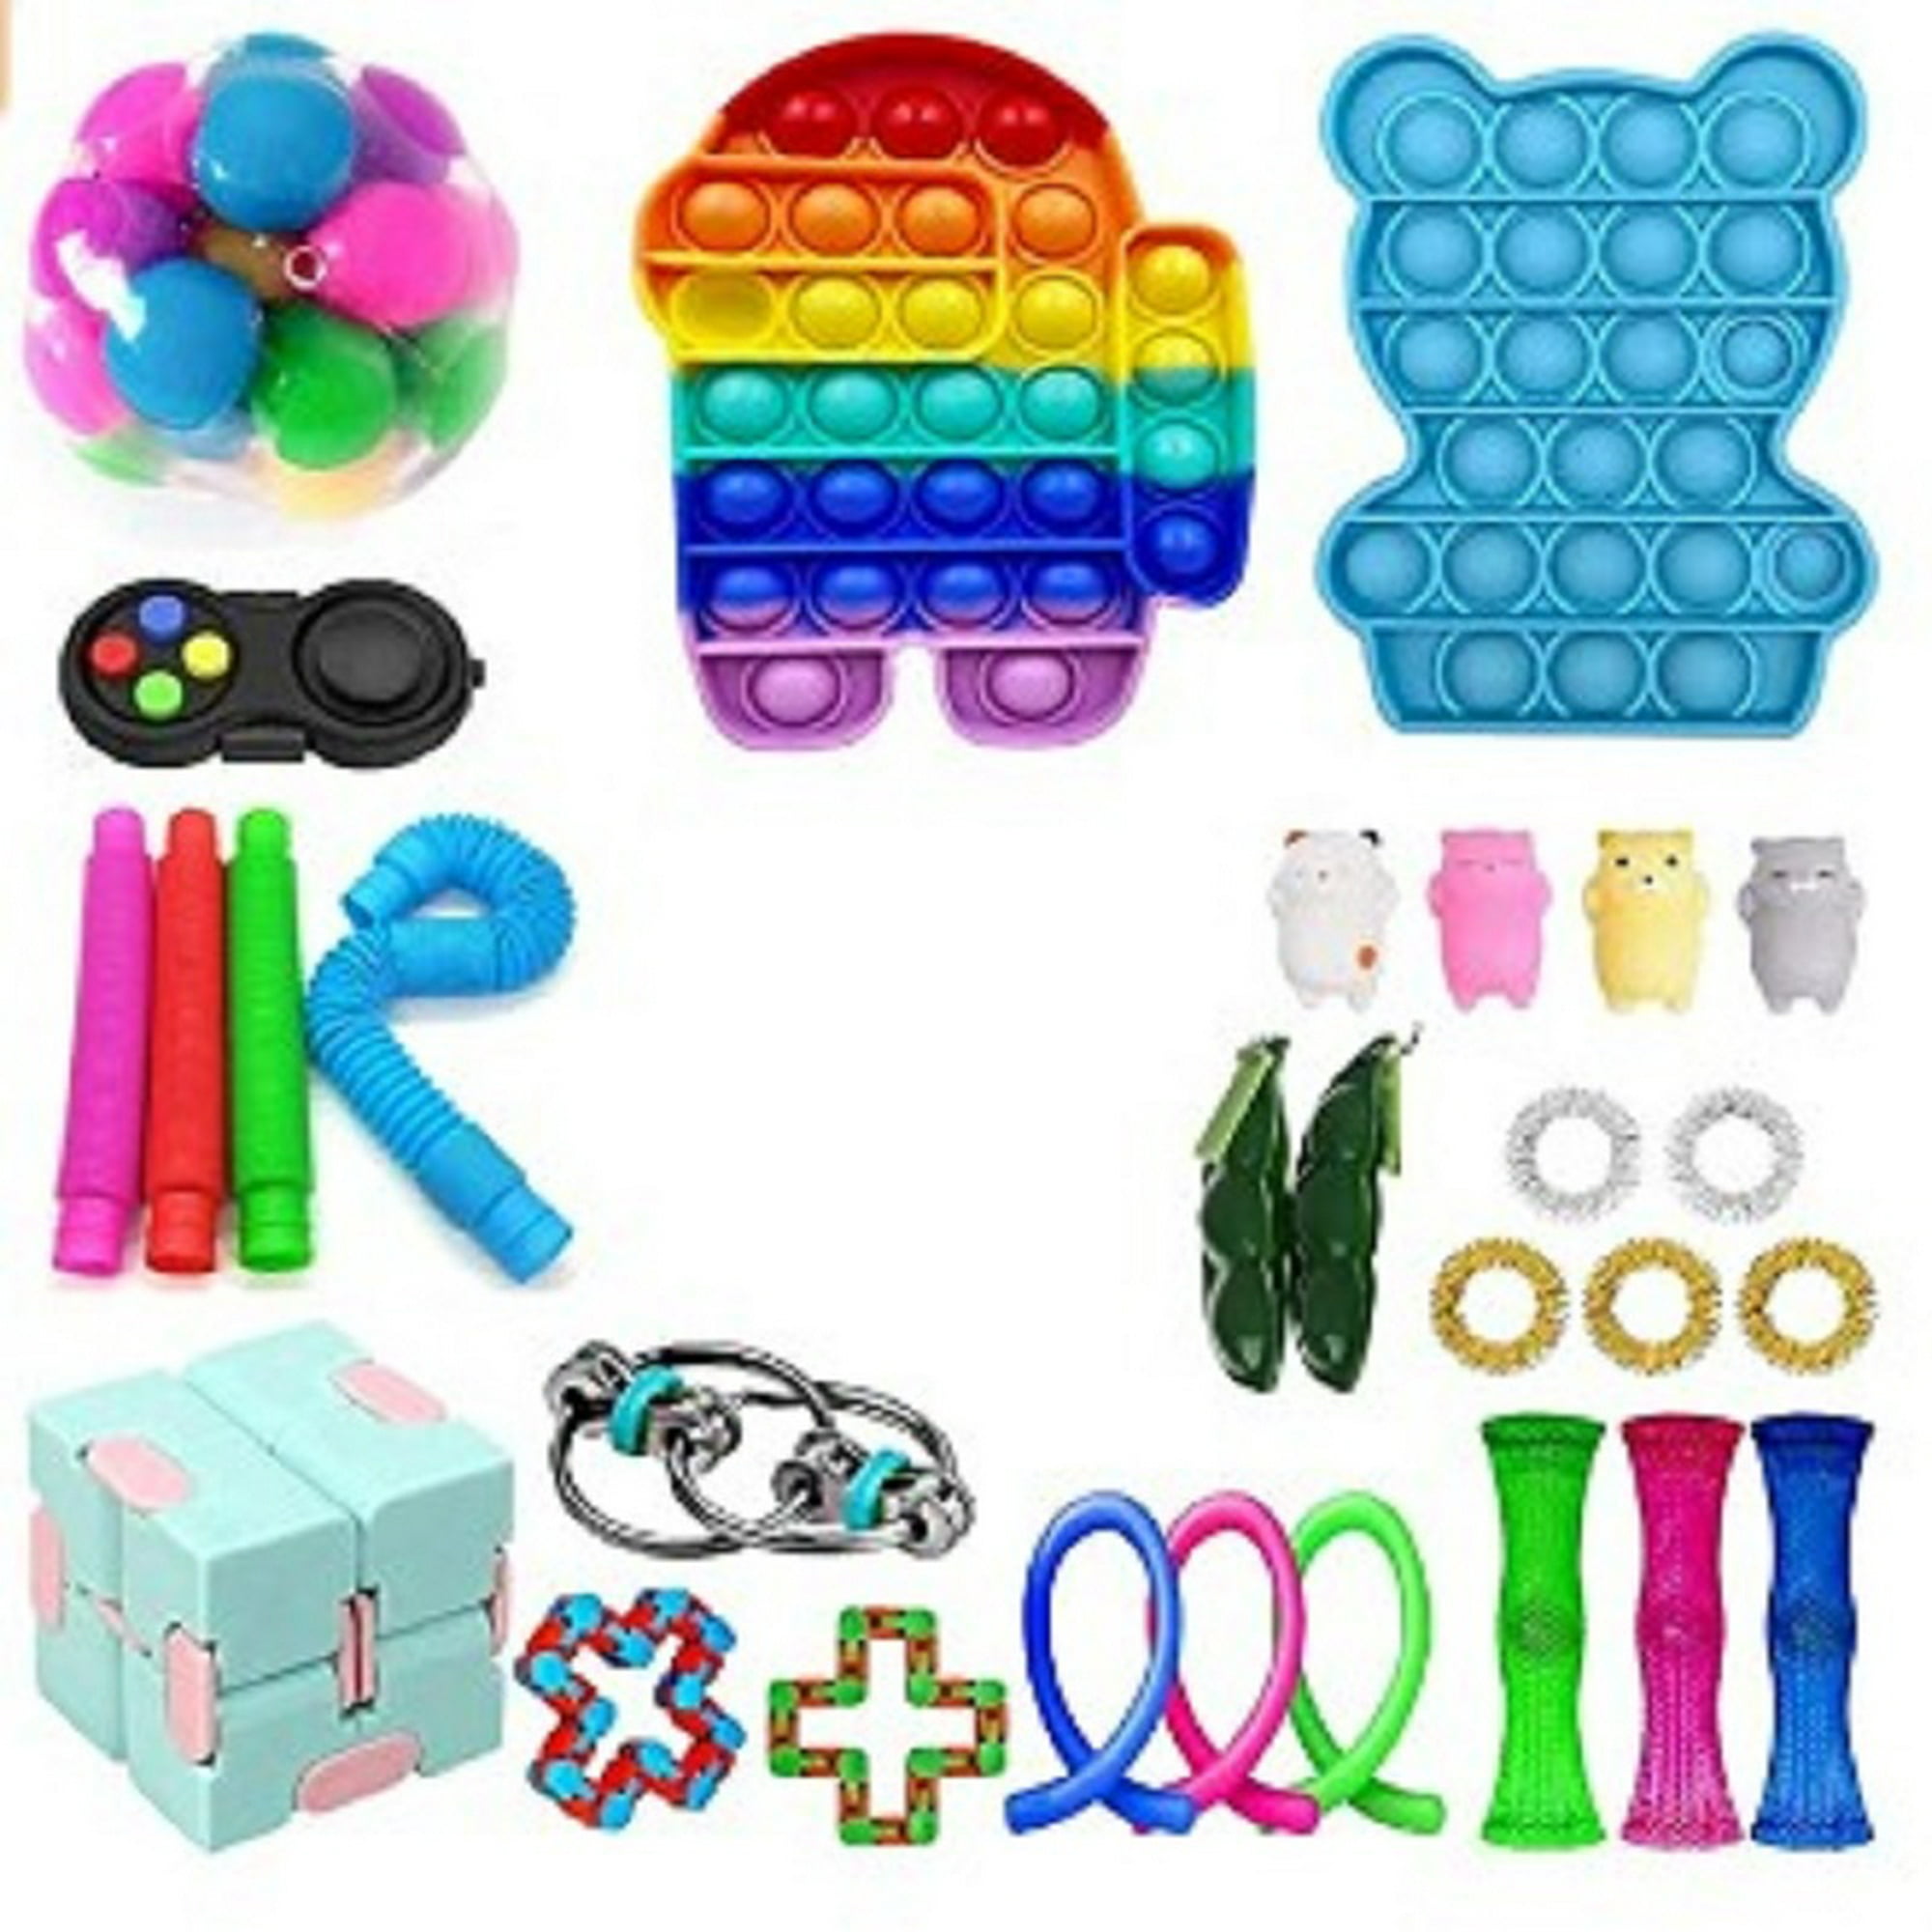 Opciones de juguetes para niños con autismo